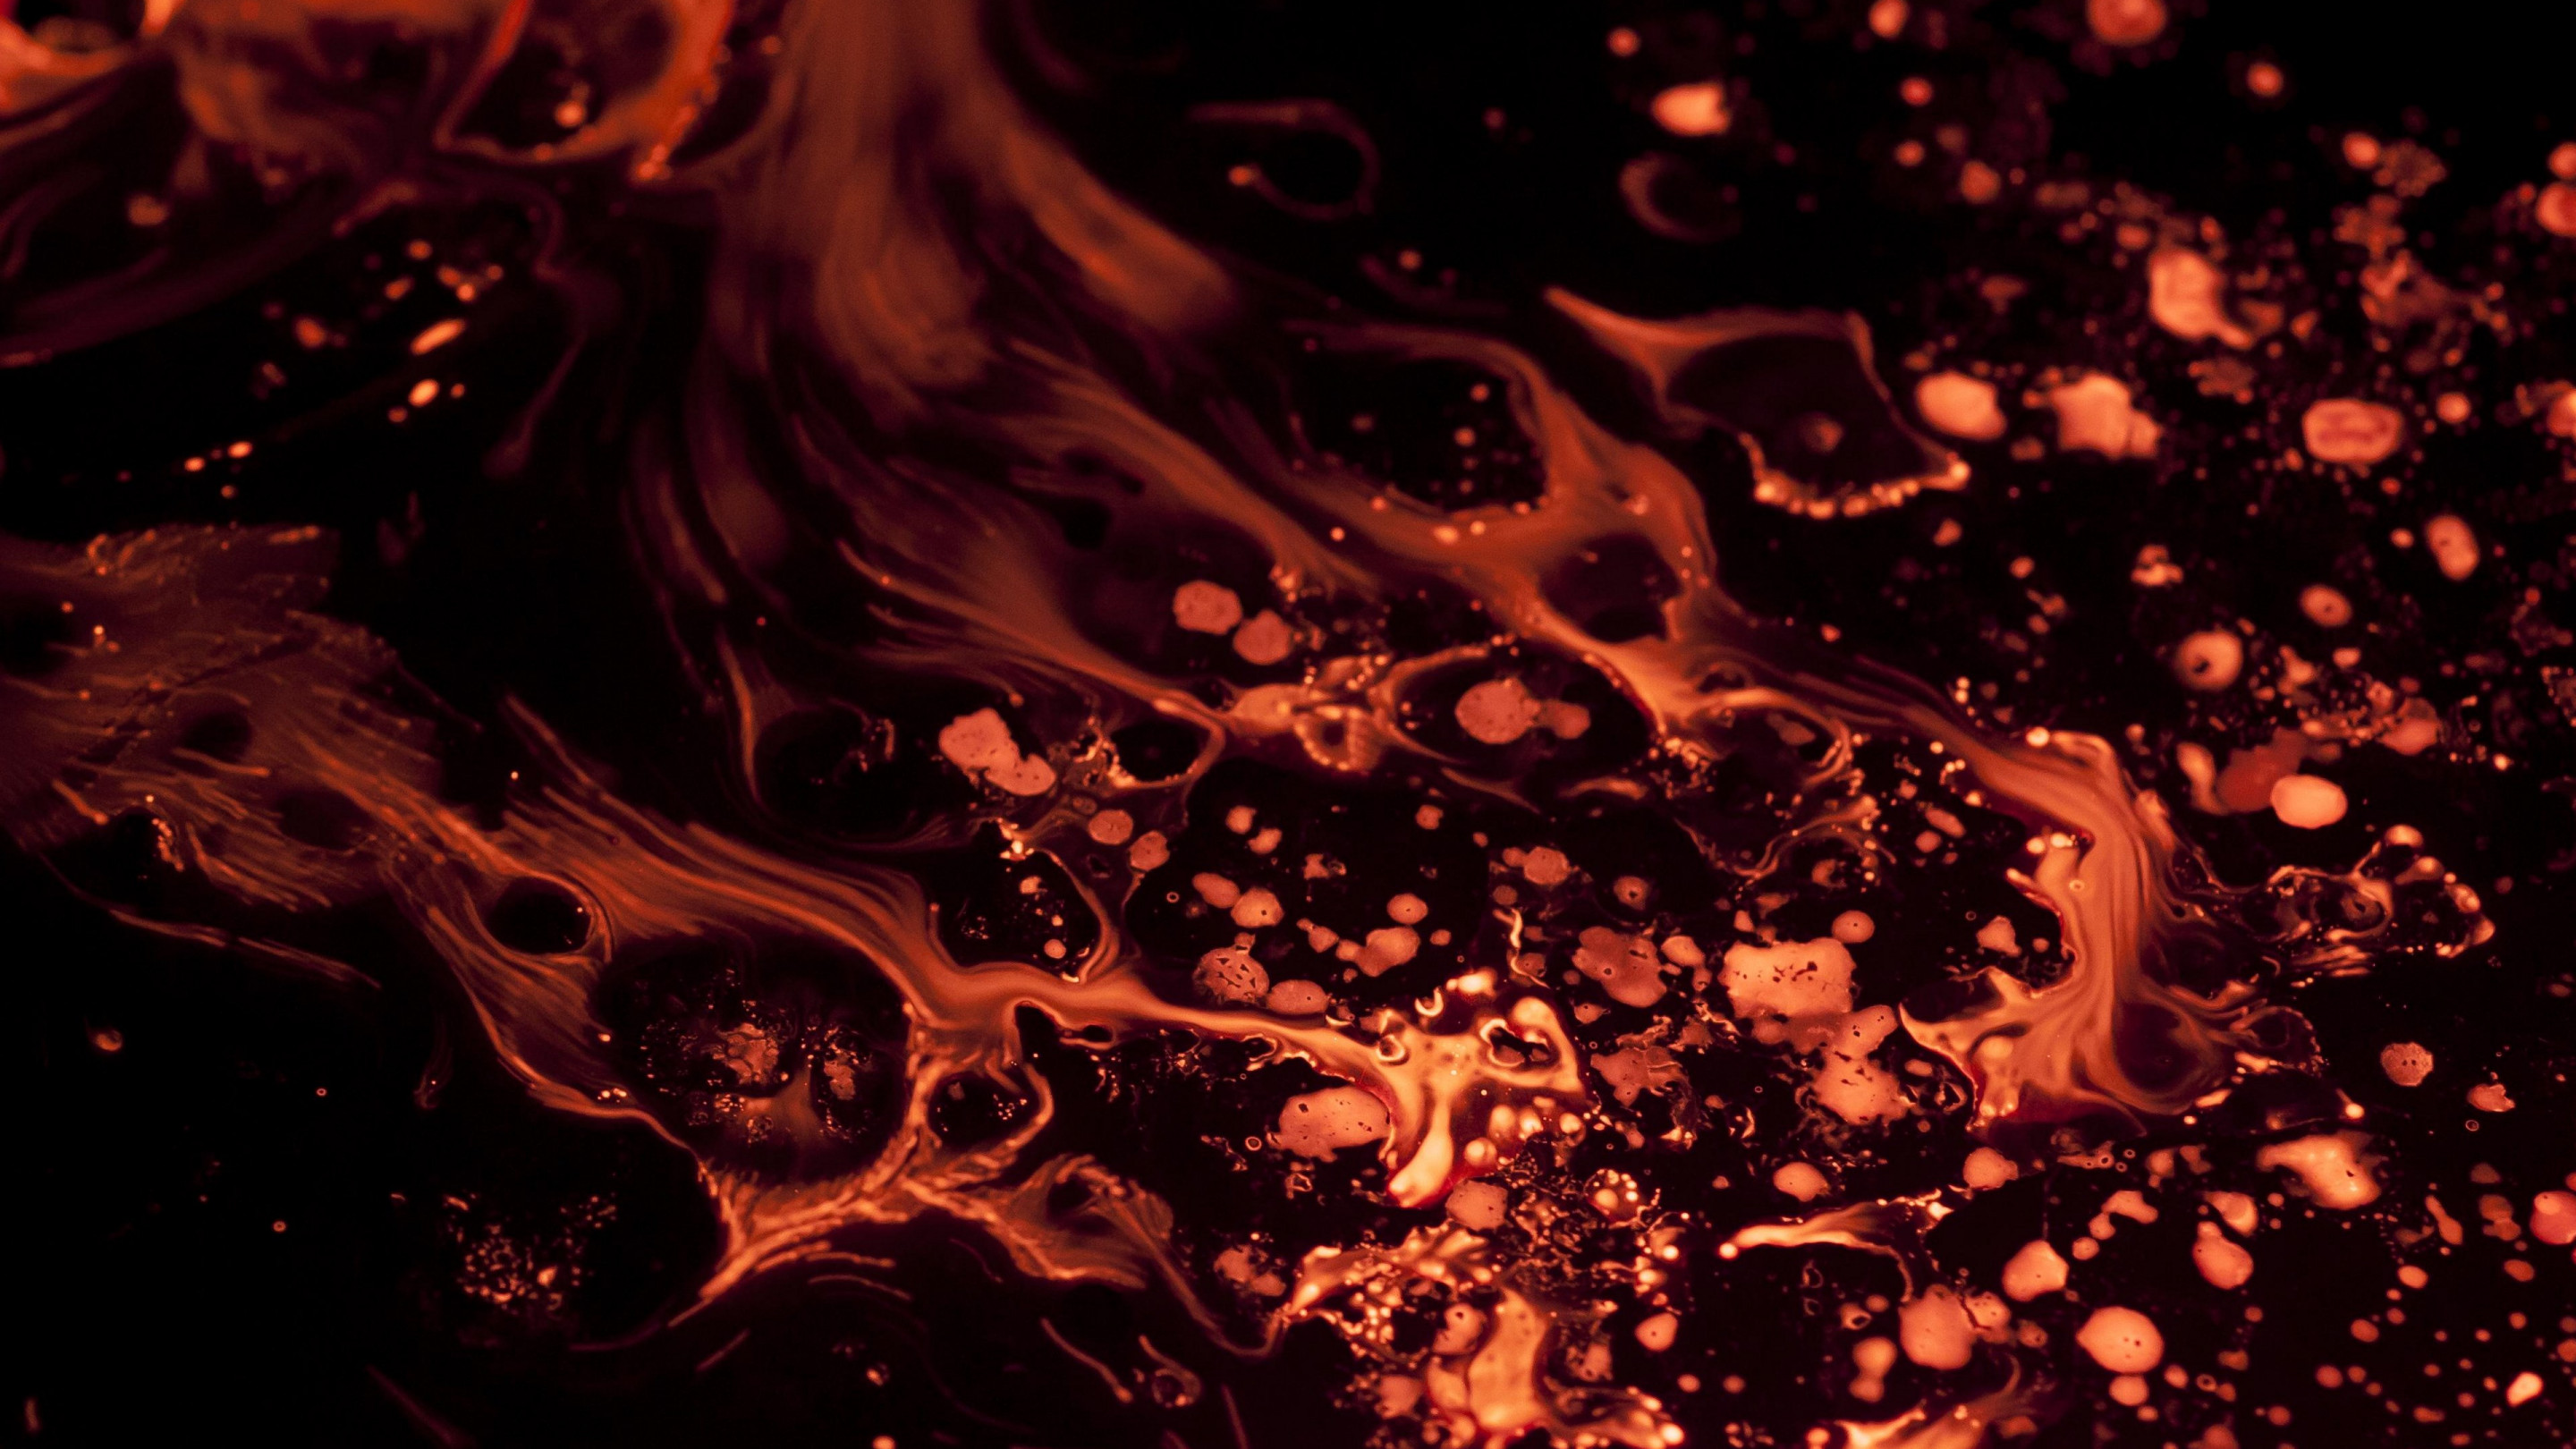 Liquid flame wallpaper 2880x1620